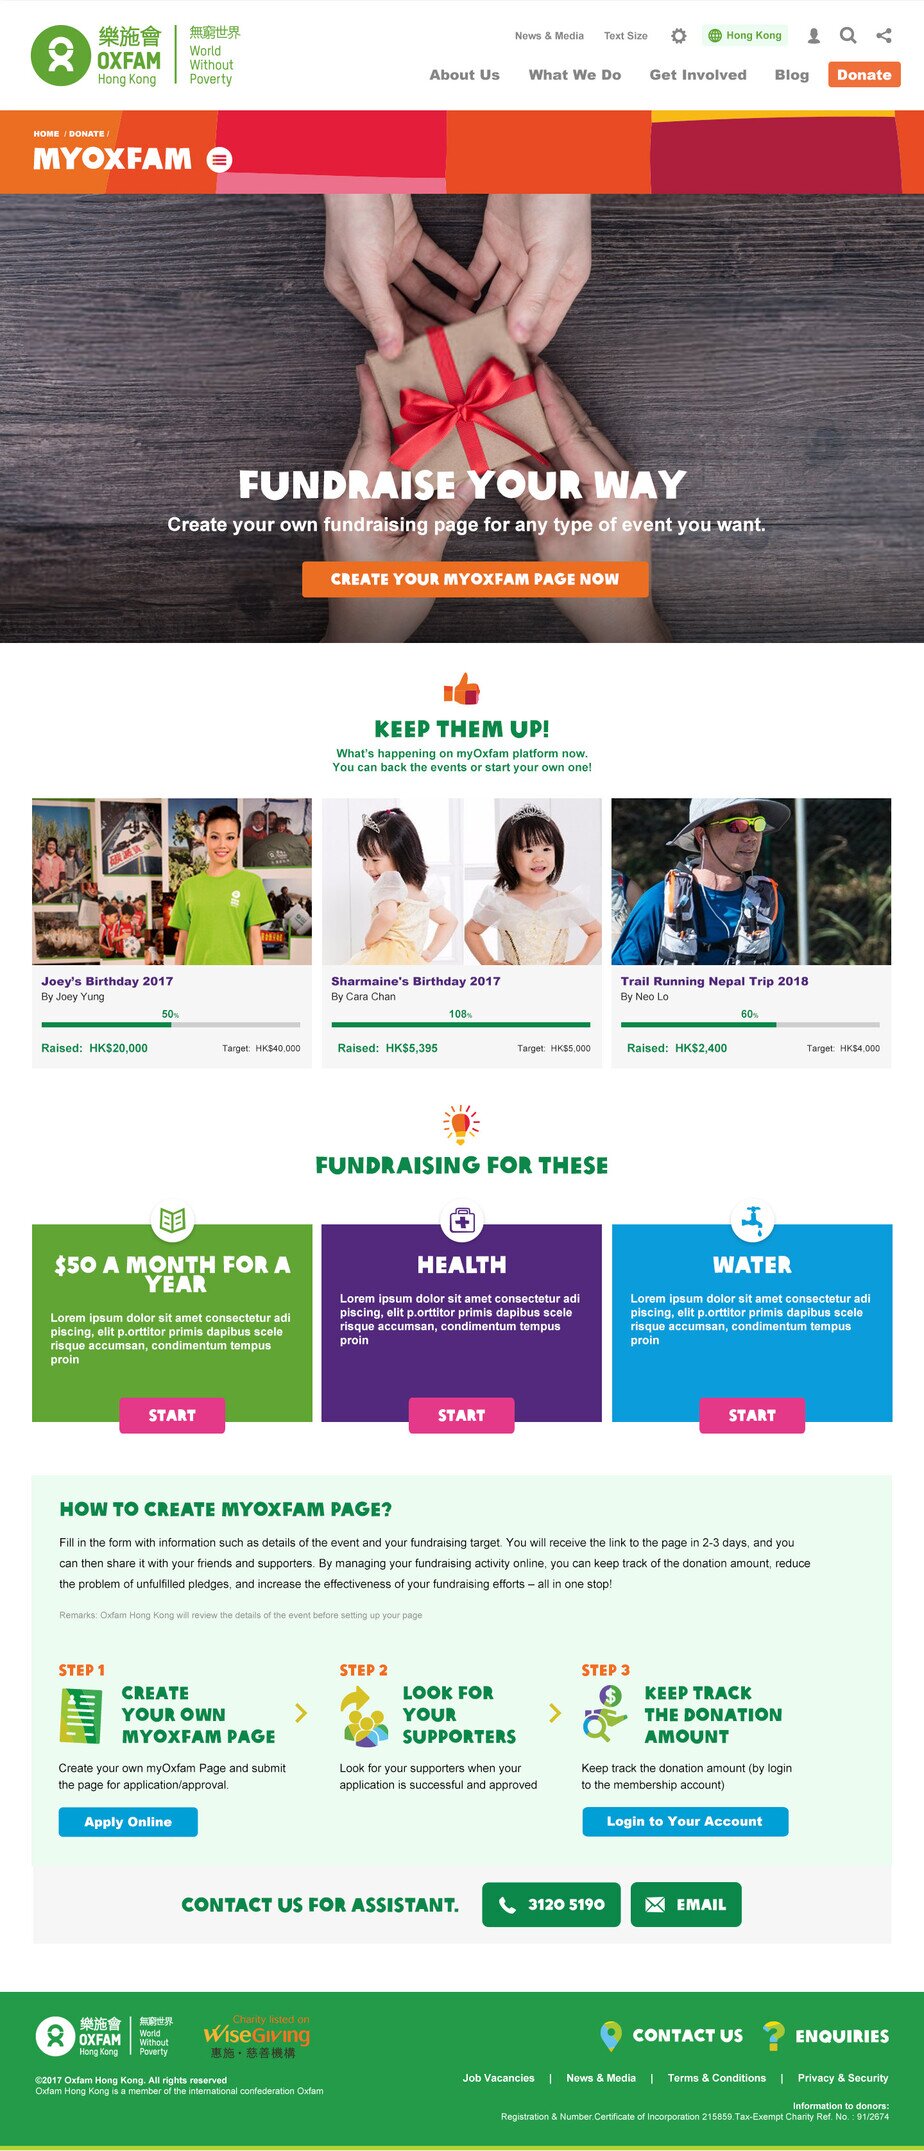 Oxfam Hong Kong website screenshot for desktop version 2 of 7